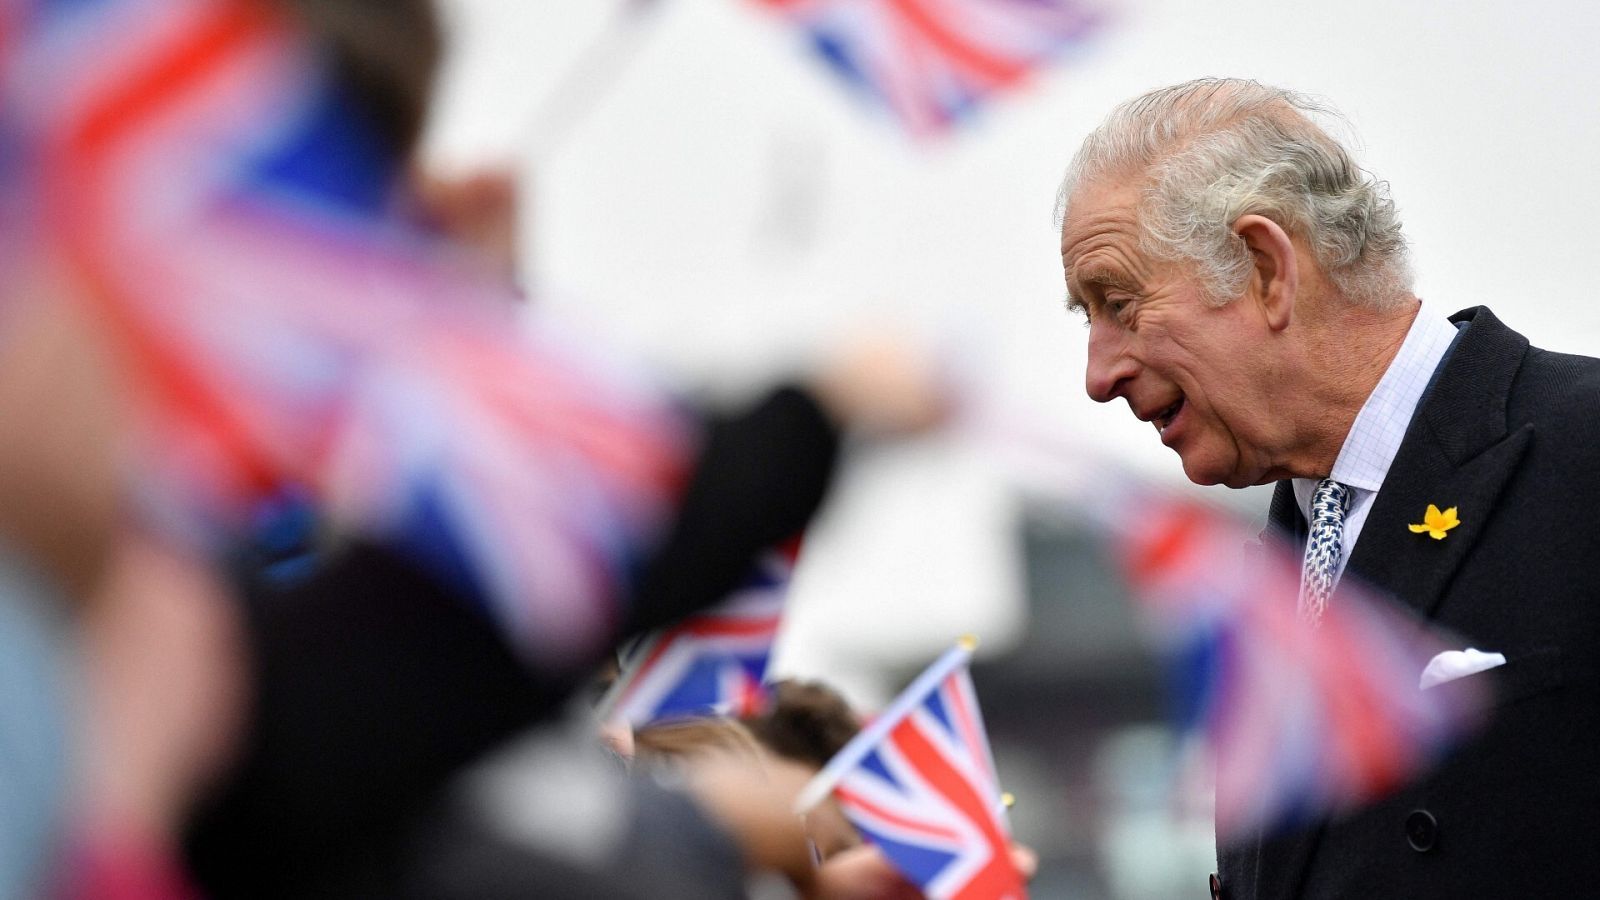 Carlos III de Gran Bretaña saluda al público durante su visita a Southend